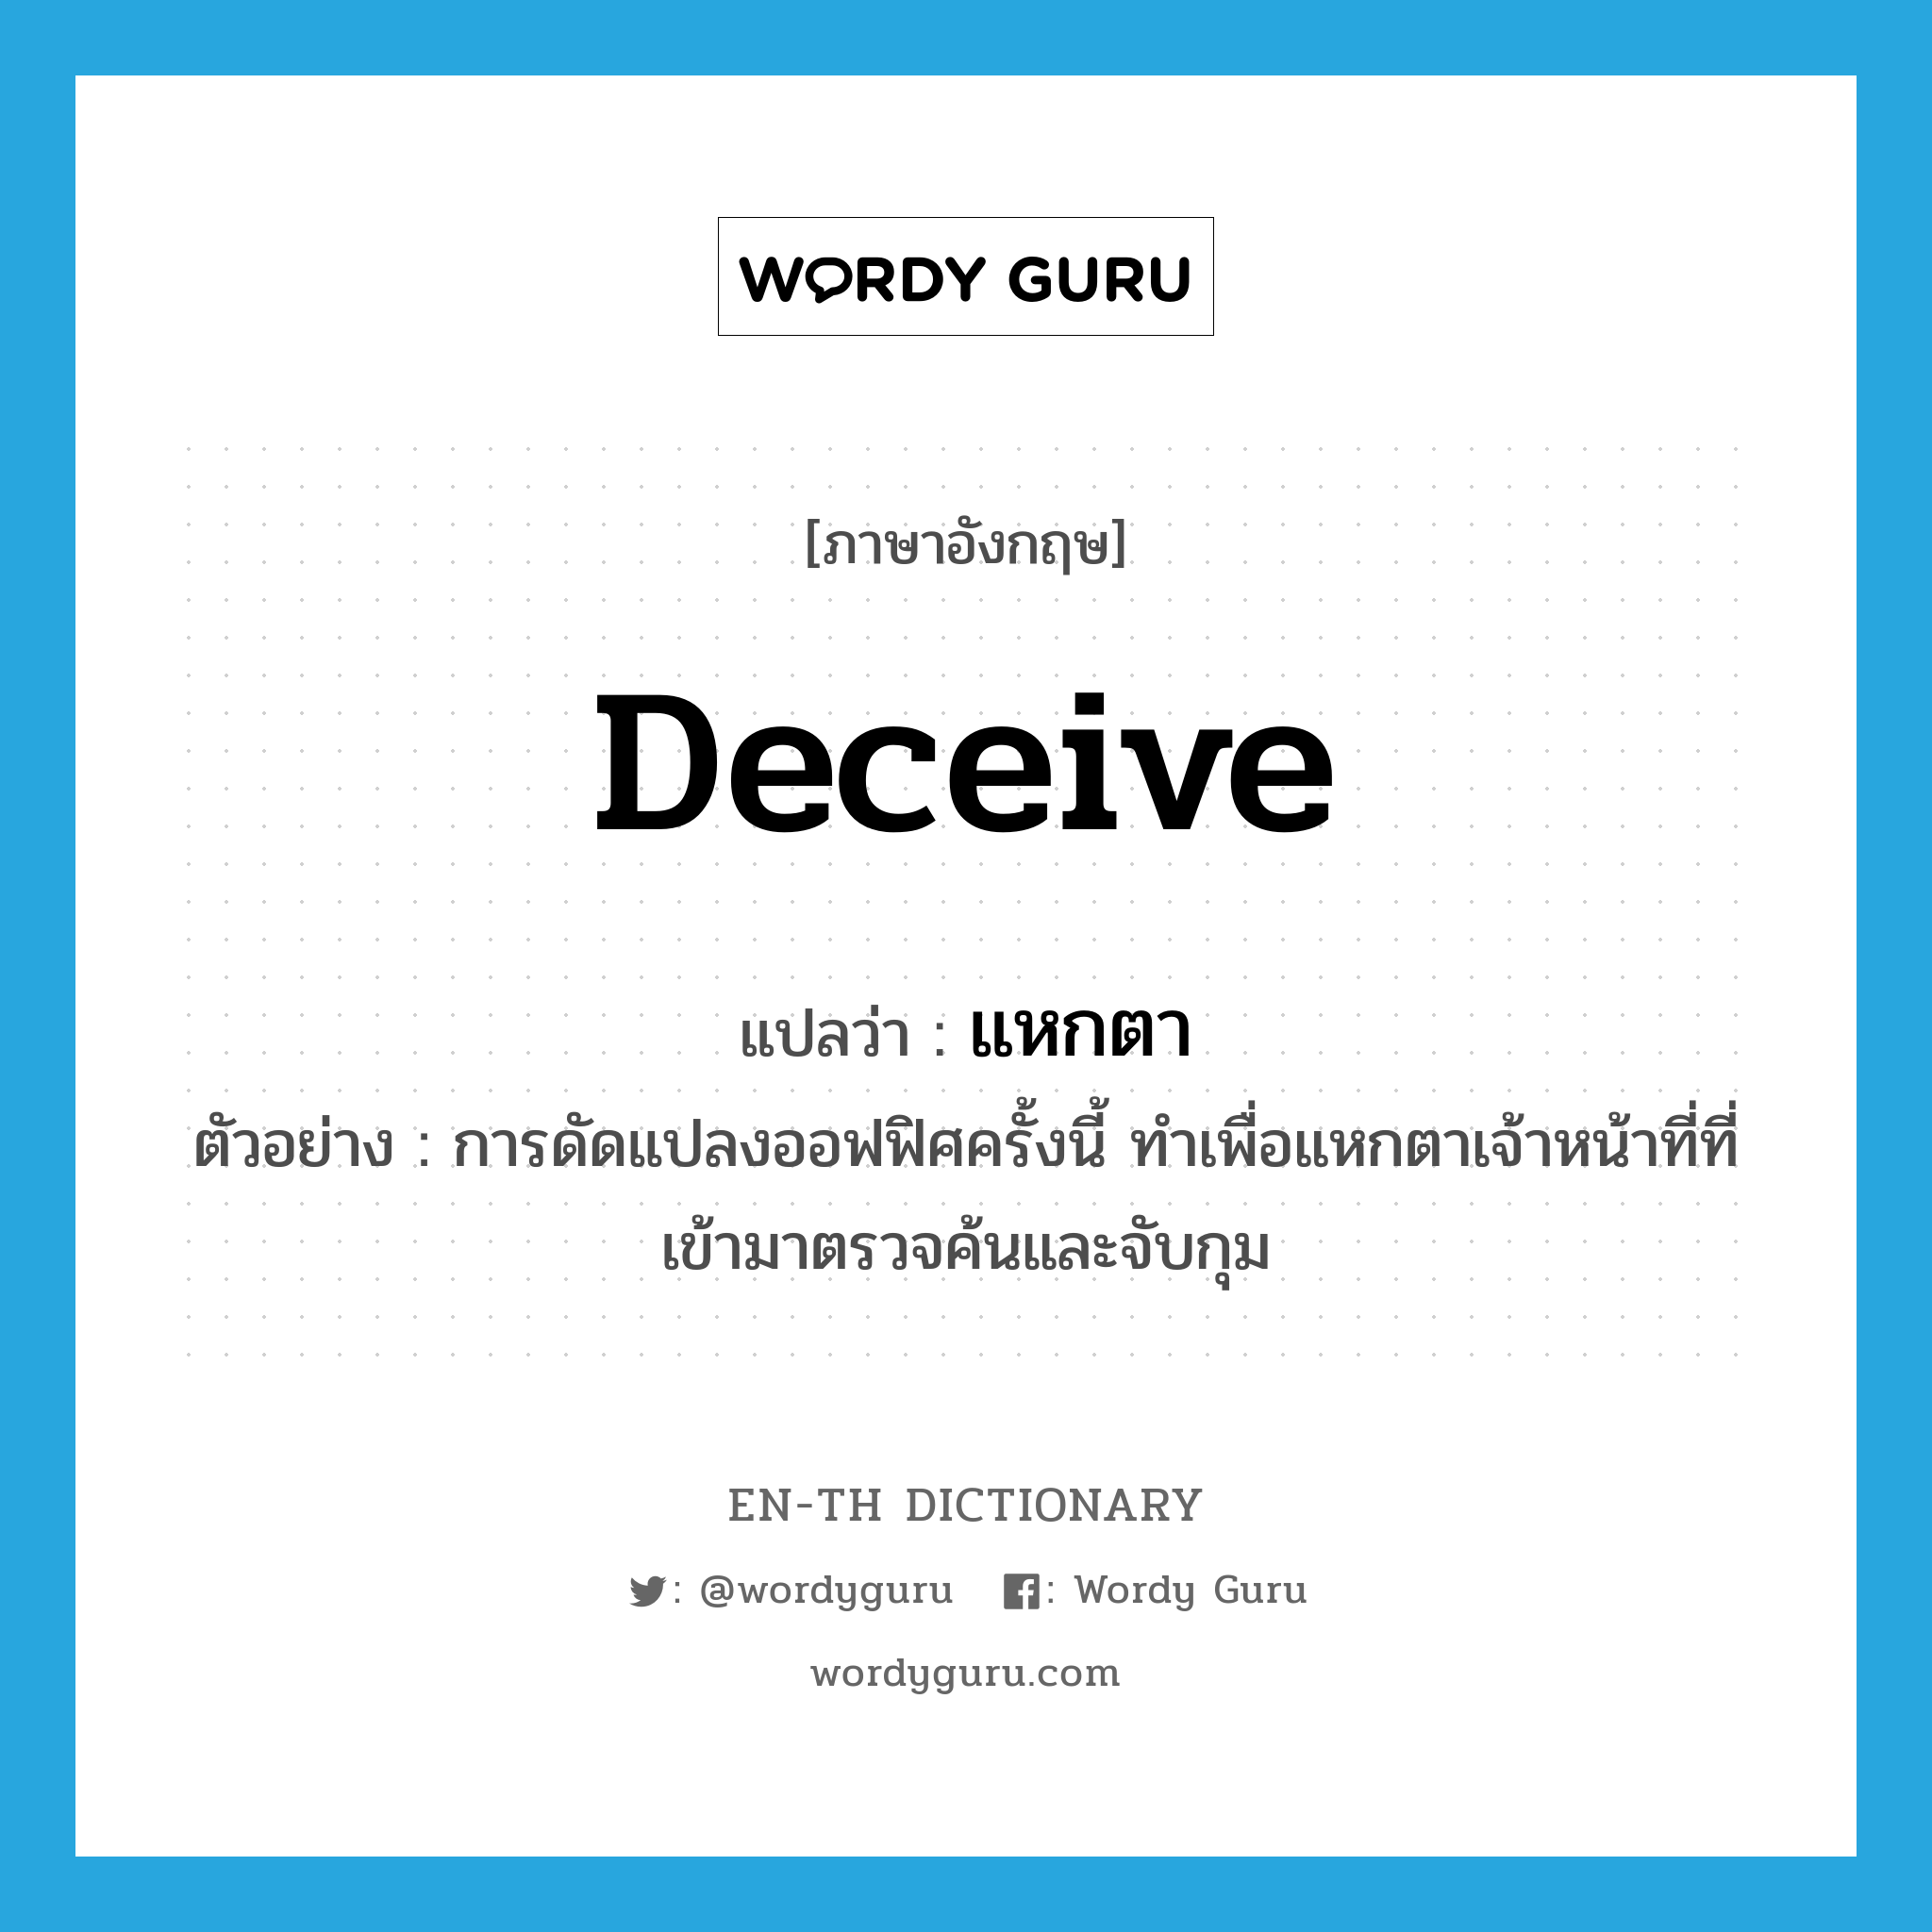 deceive แปลว่า?, คำศัพท์ภาษาอังกฤษ deceive แปลว่า แหกตา ประเภท V ตัวอย่าง การดัดแปลงออฟฟิศครั้งนี้ ทำเพื่อแหกตาเจ้าหน้าที่ที่เข้ามาตรวจค้นและจับกุม หมวด V